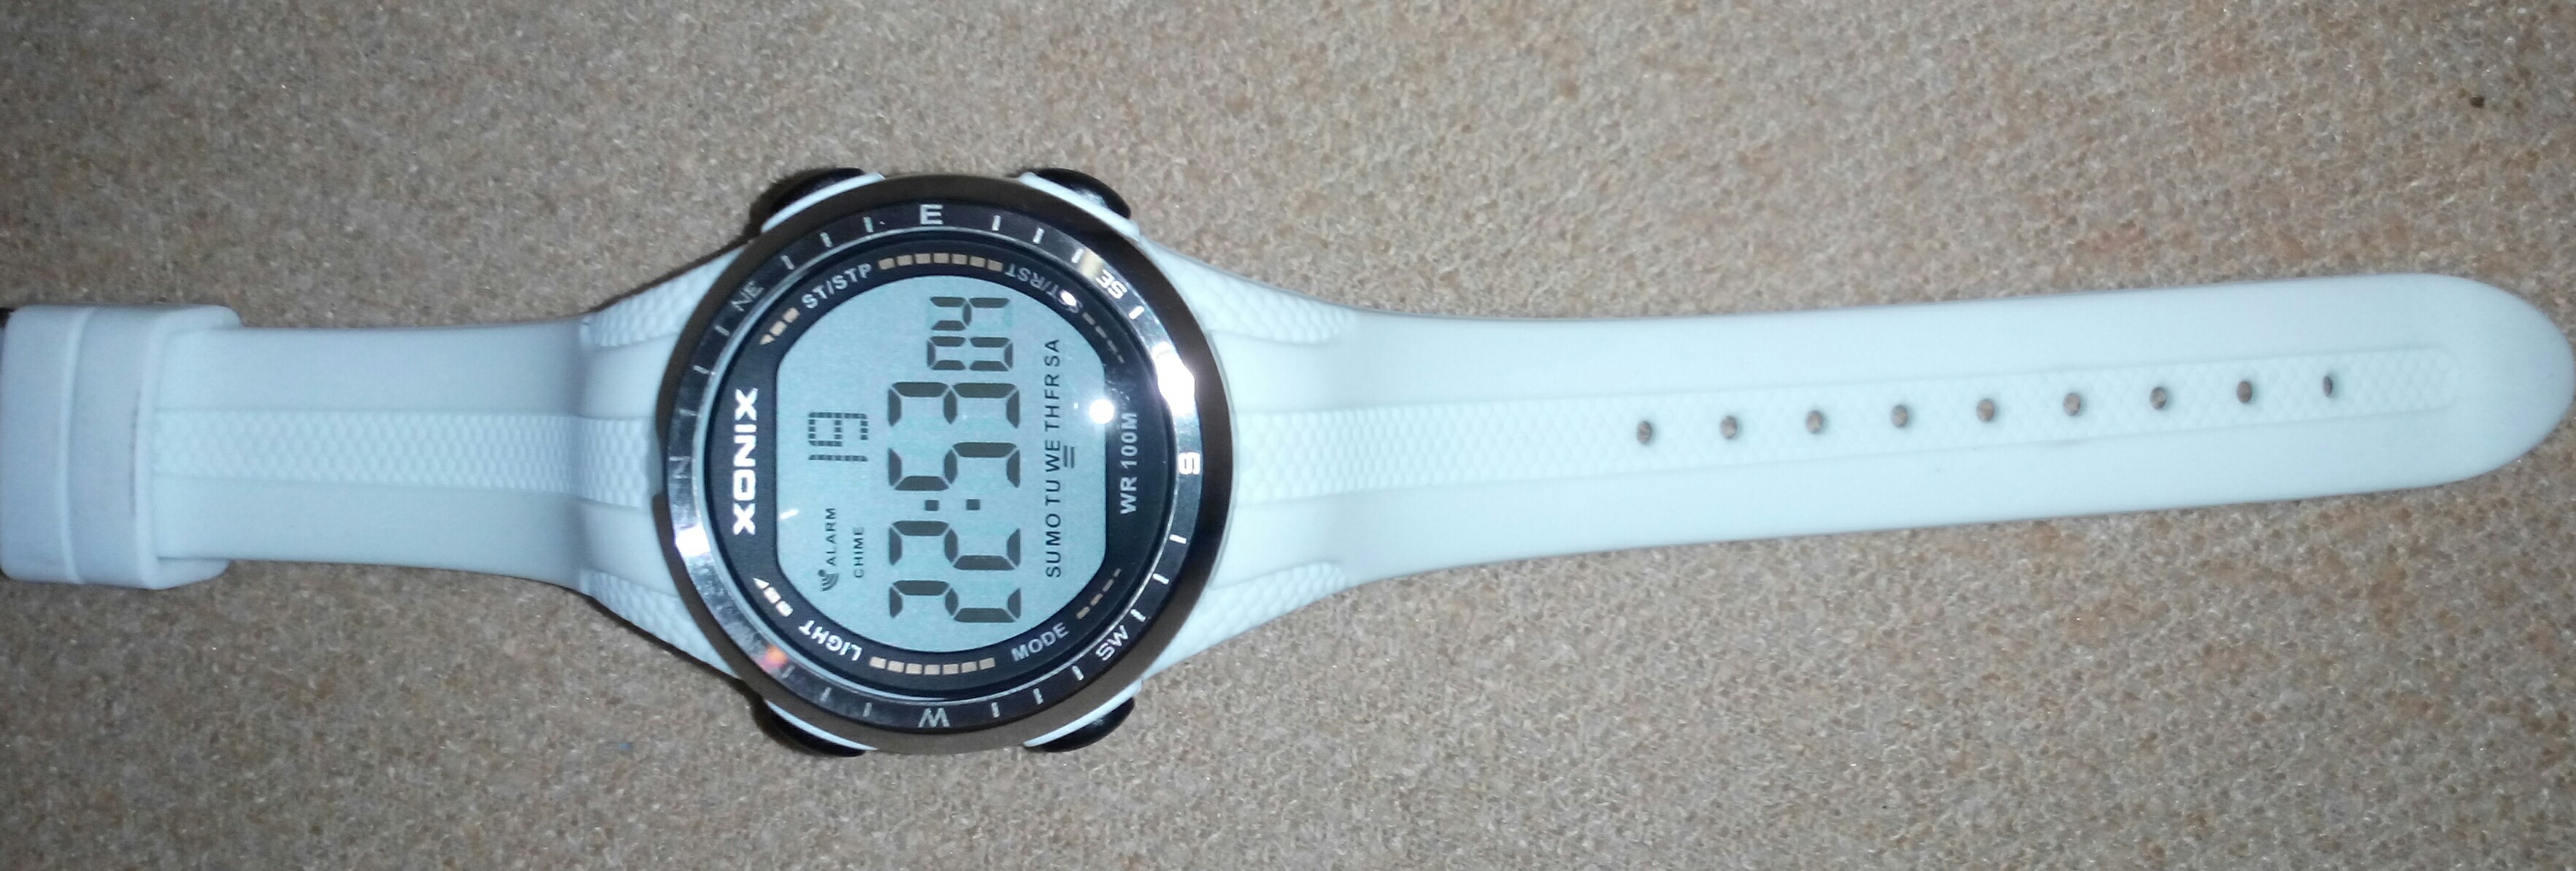 Покажите Ваши электронные часы - Страница - Часовой форум витамин-п-байкальский.рф